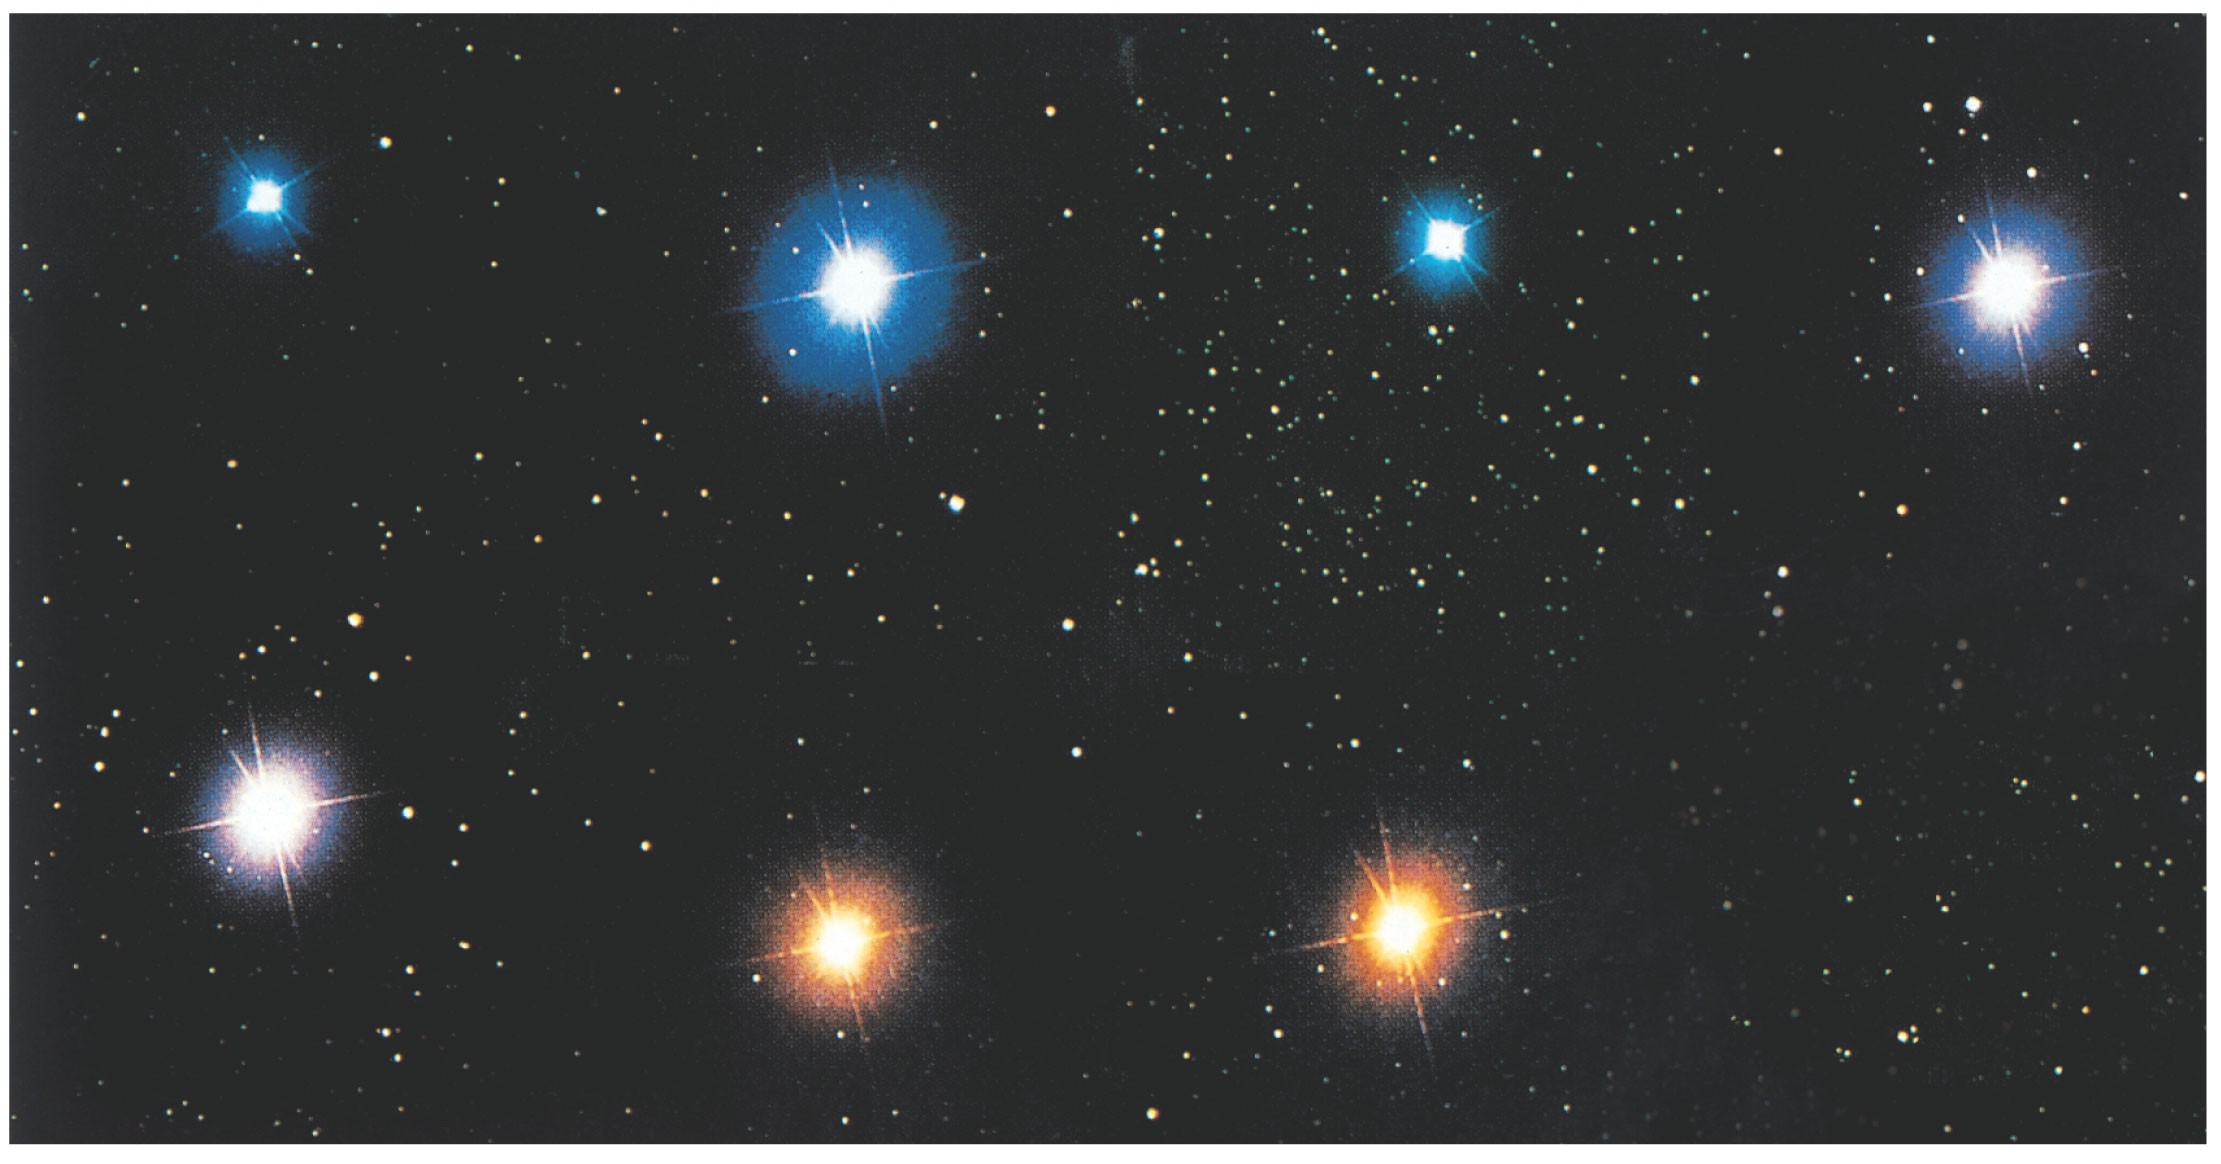 Le caratteristiche delle stelle Esempi di stelle appartenenti a vari tipi spettrali (messe insieme artificialmente).